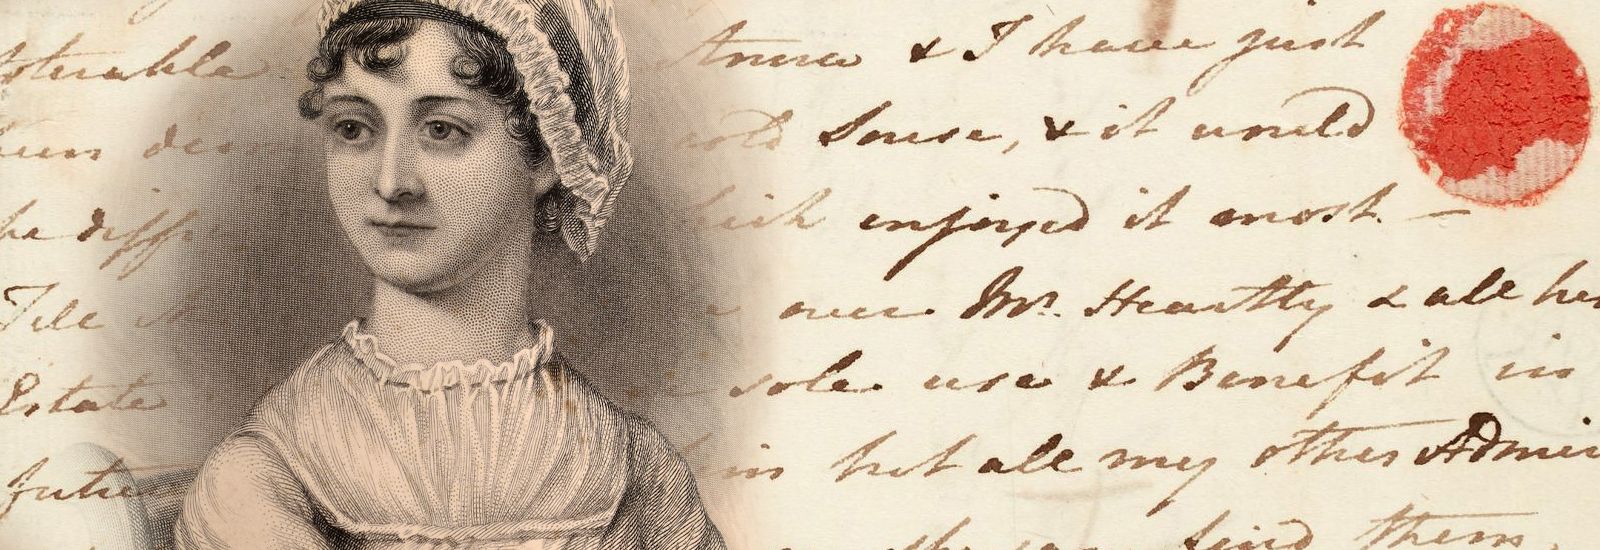 Jane Austen image and handwriting